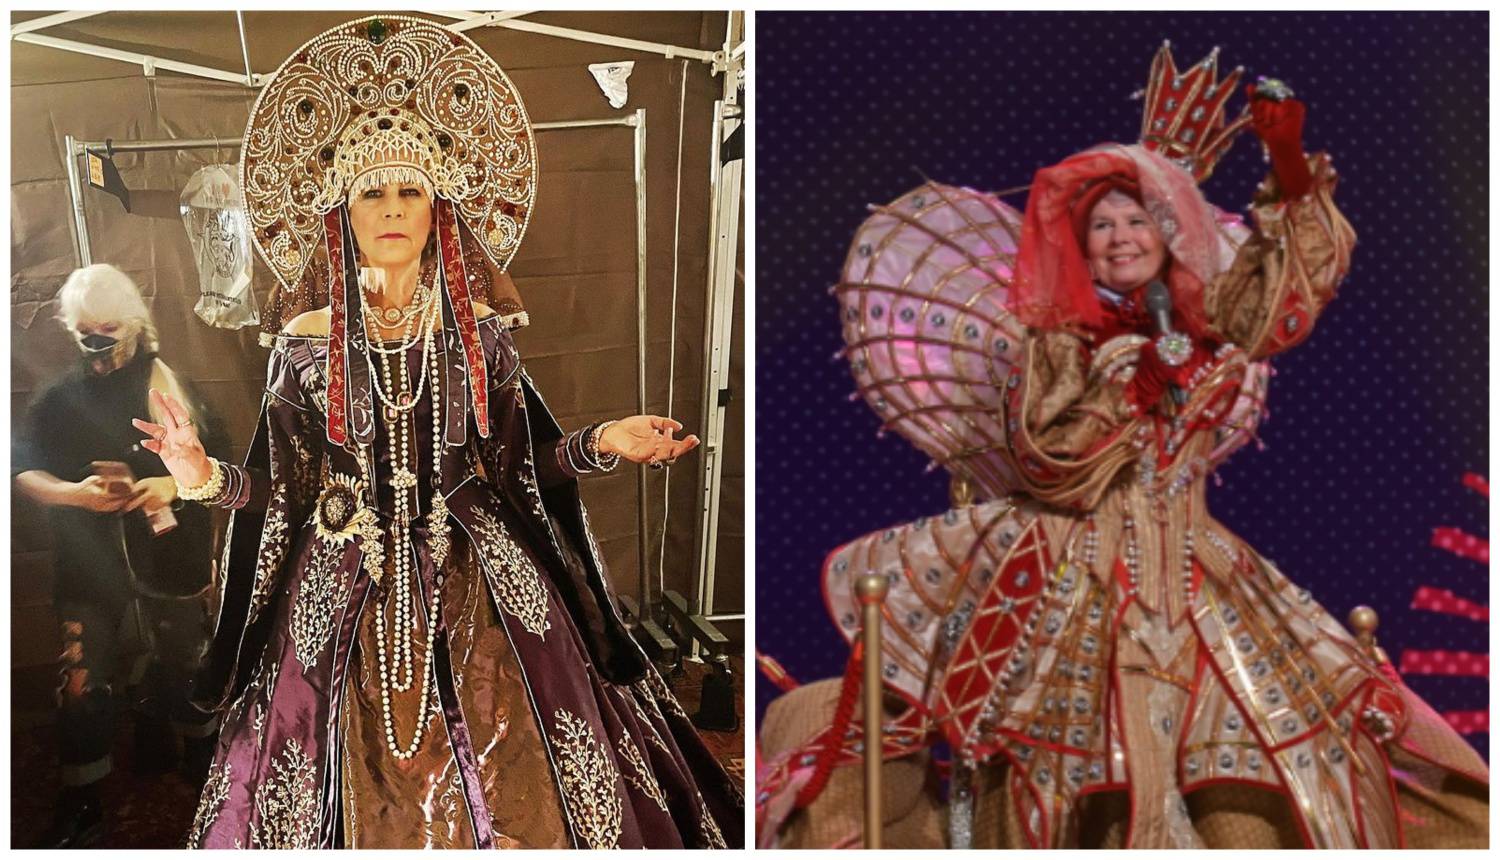 Jamie kao 'kraljica' Jadranka: 'Nikad do sad nisam nosila tako glamurozan kostim. Čast mi je'